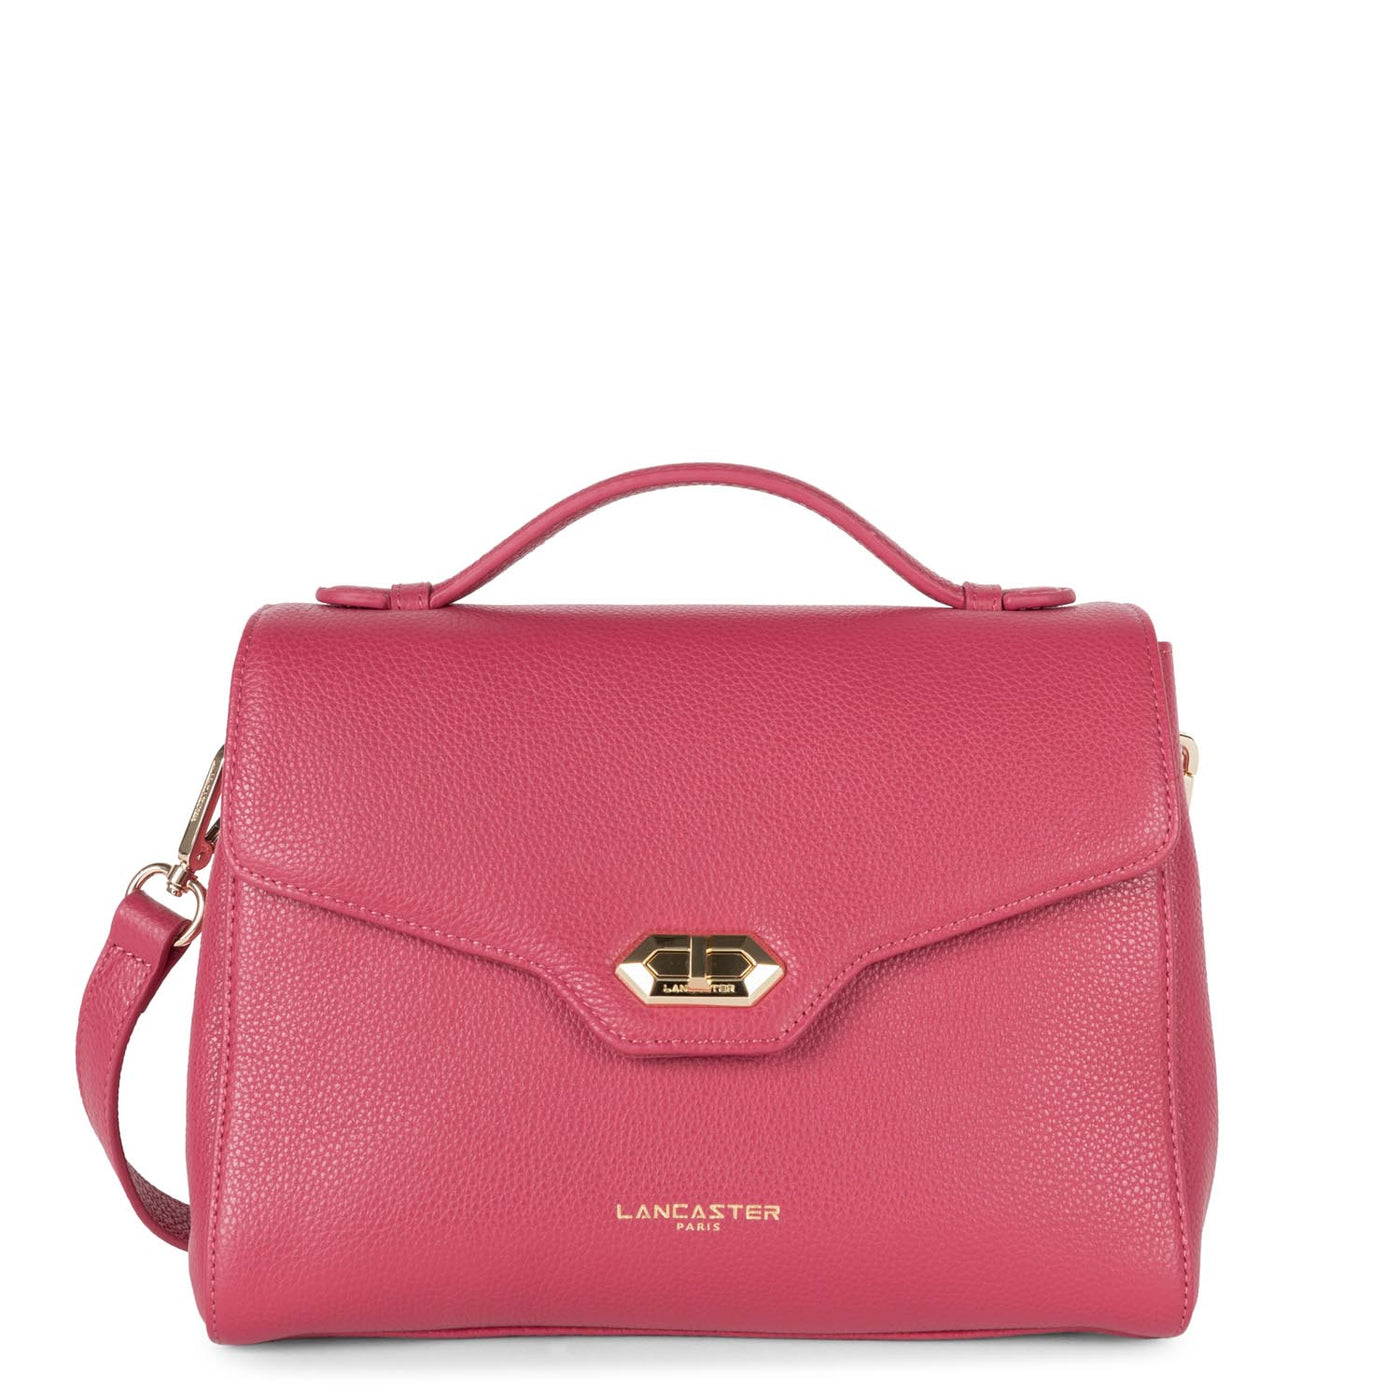 handbag - foulonné milano #couleur_fuxia